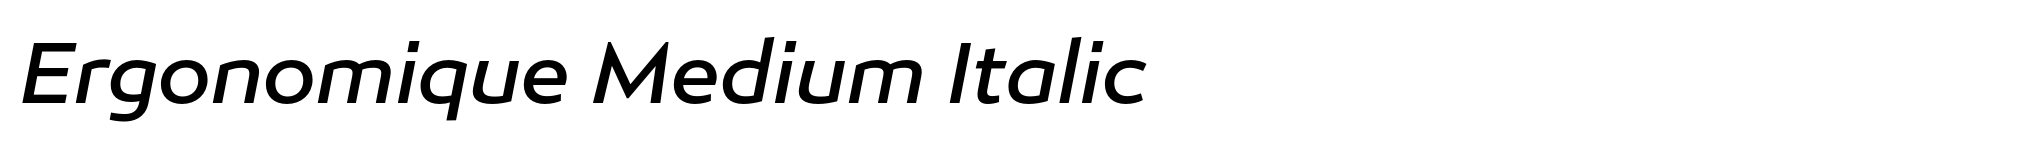 Ergonomique Medium Italic image